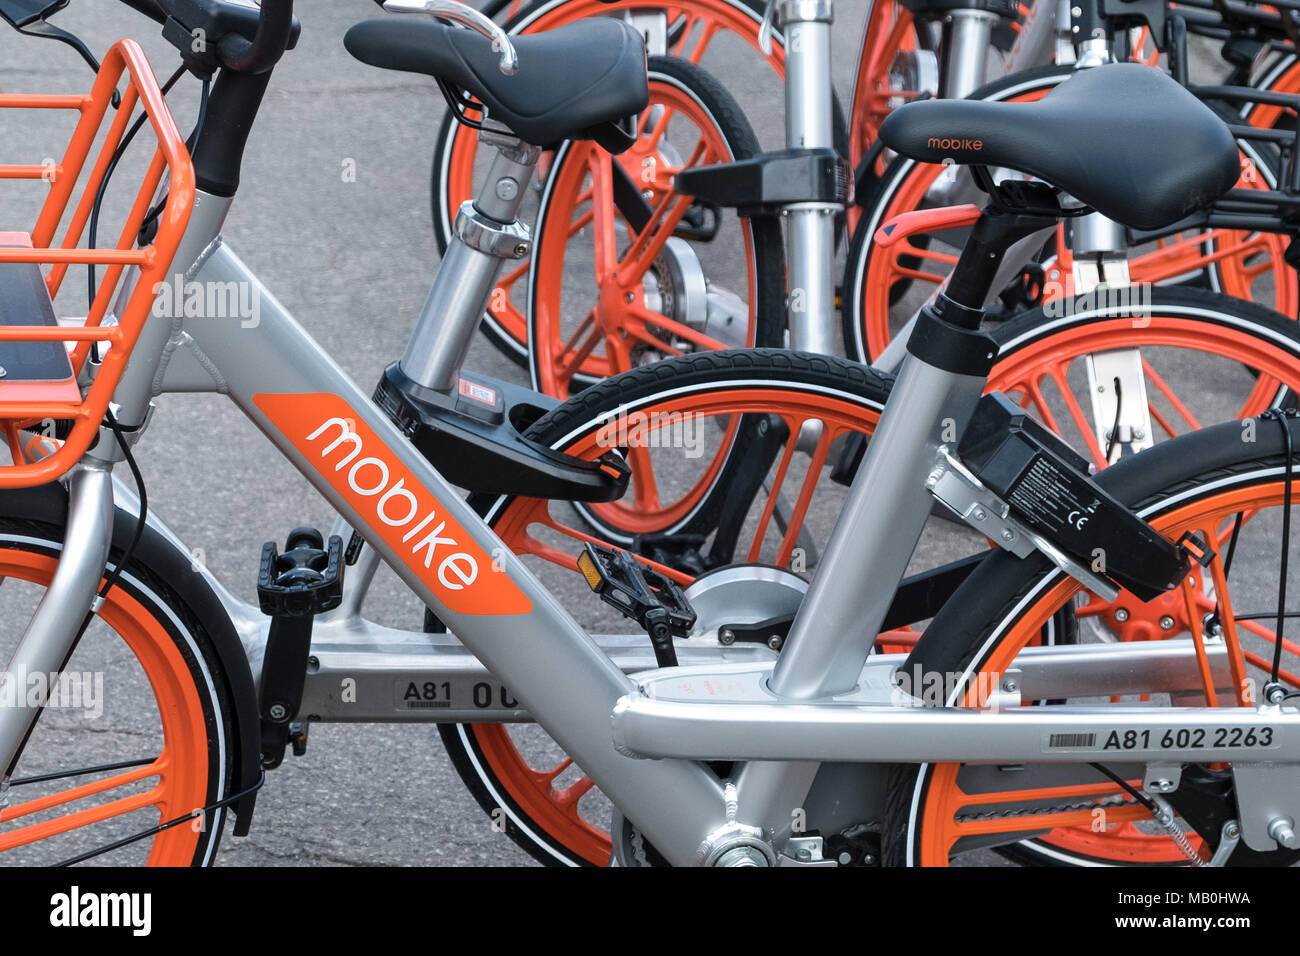 Berlin, Deutschland - April 2018: mobike Bikes. Mobike ist ein Fahrrad sharing System mit Sitz in Peking, China Stockfoto